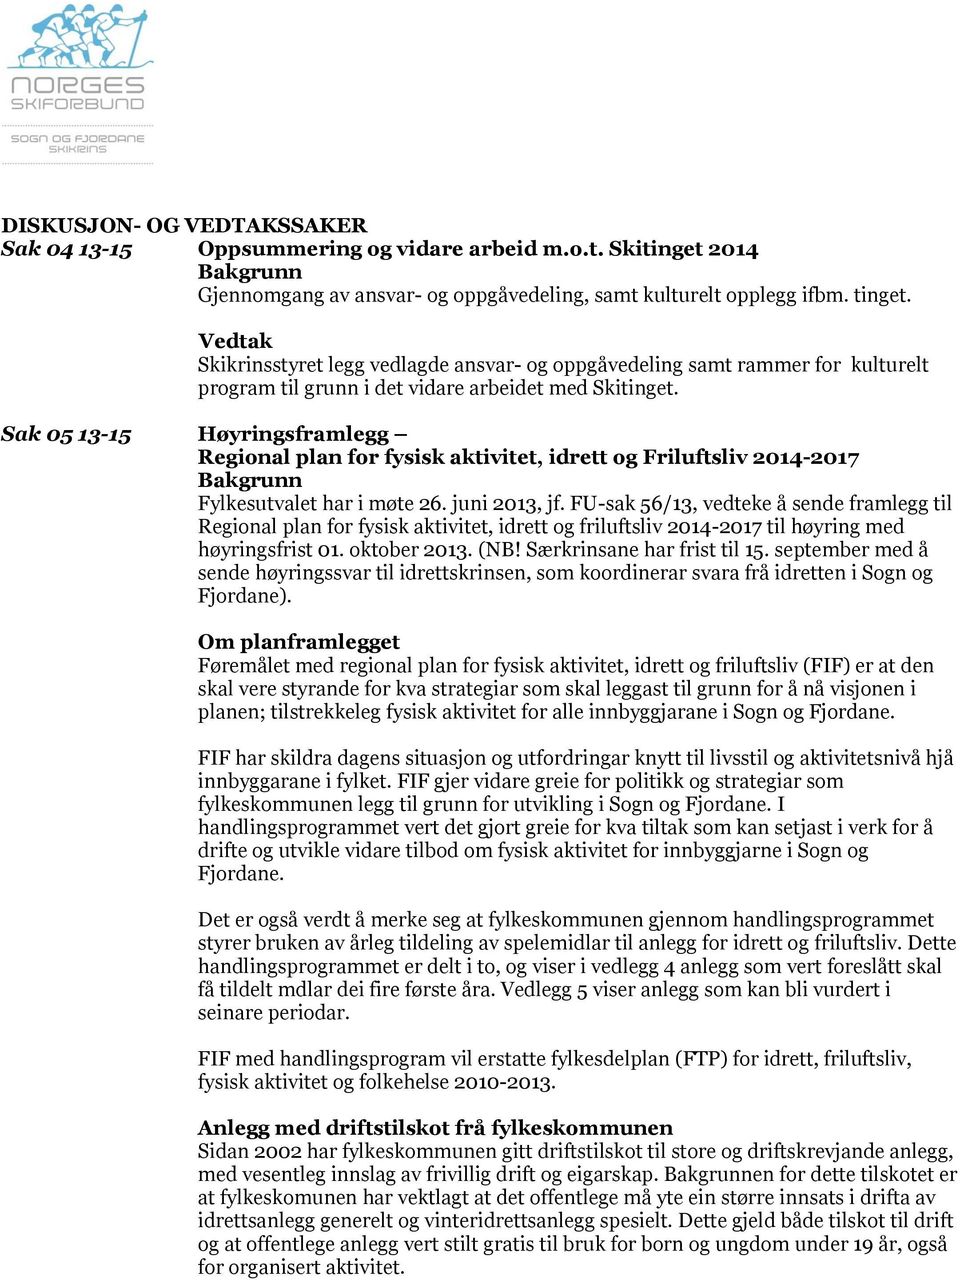 Sak 05 13-15 Høyringsframlegg Regional plan for fysisk aktivitet, idrett og Friluftsliv 2014-2017 Fylkesutvalet har i møte 26. juni 2013, jf.